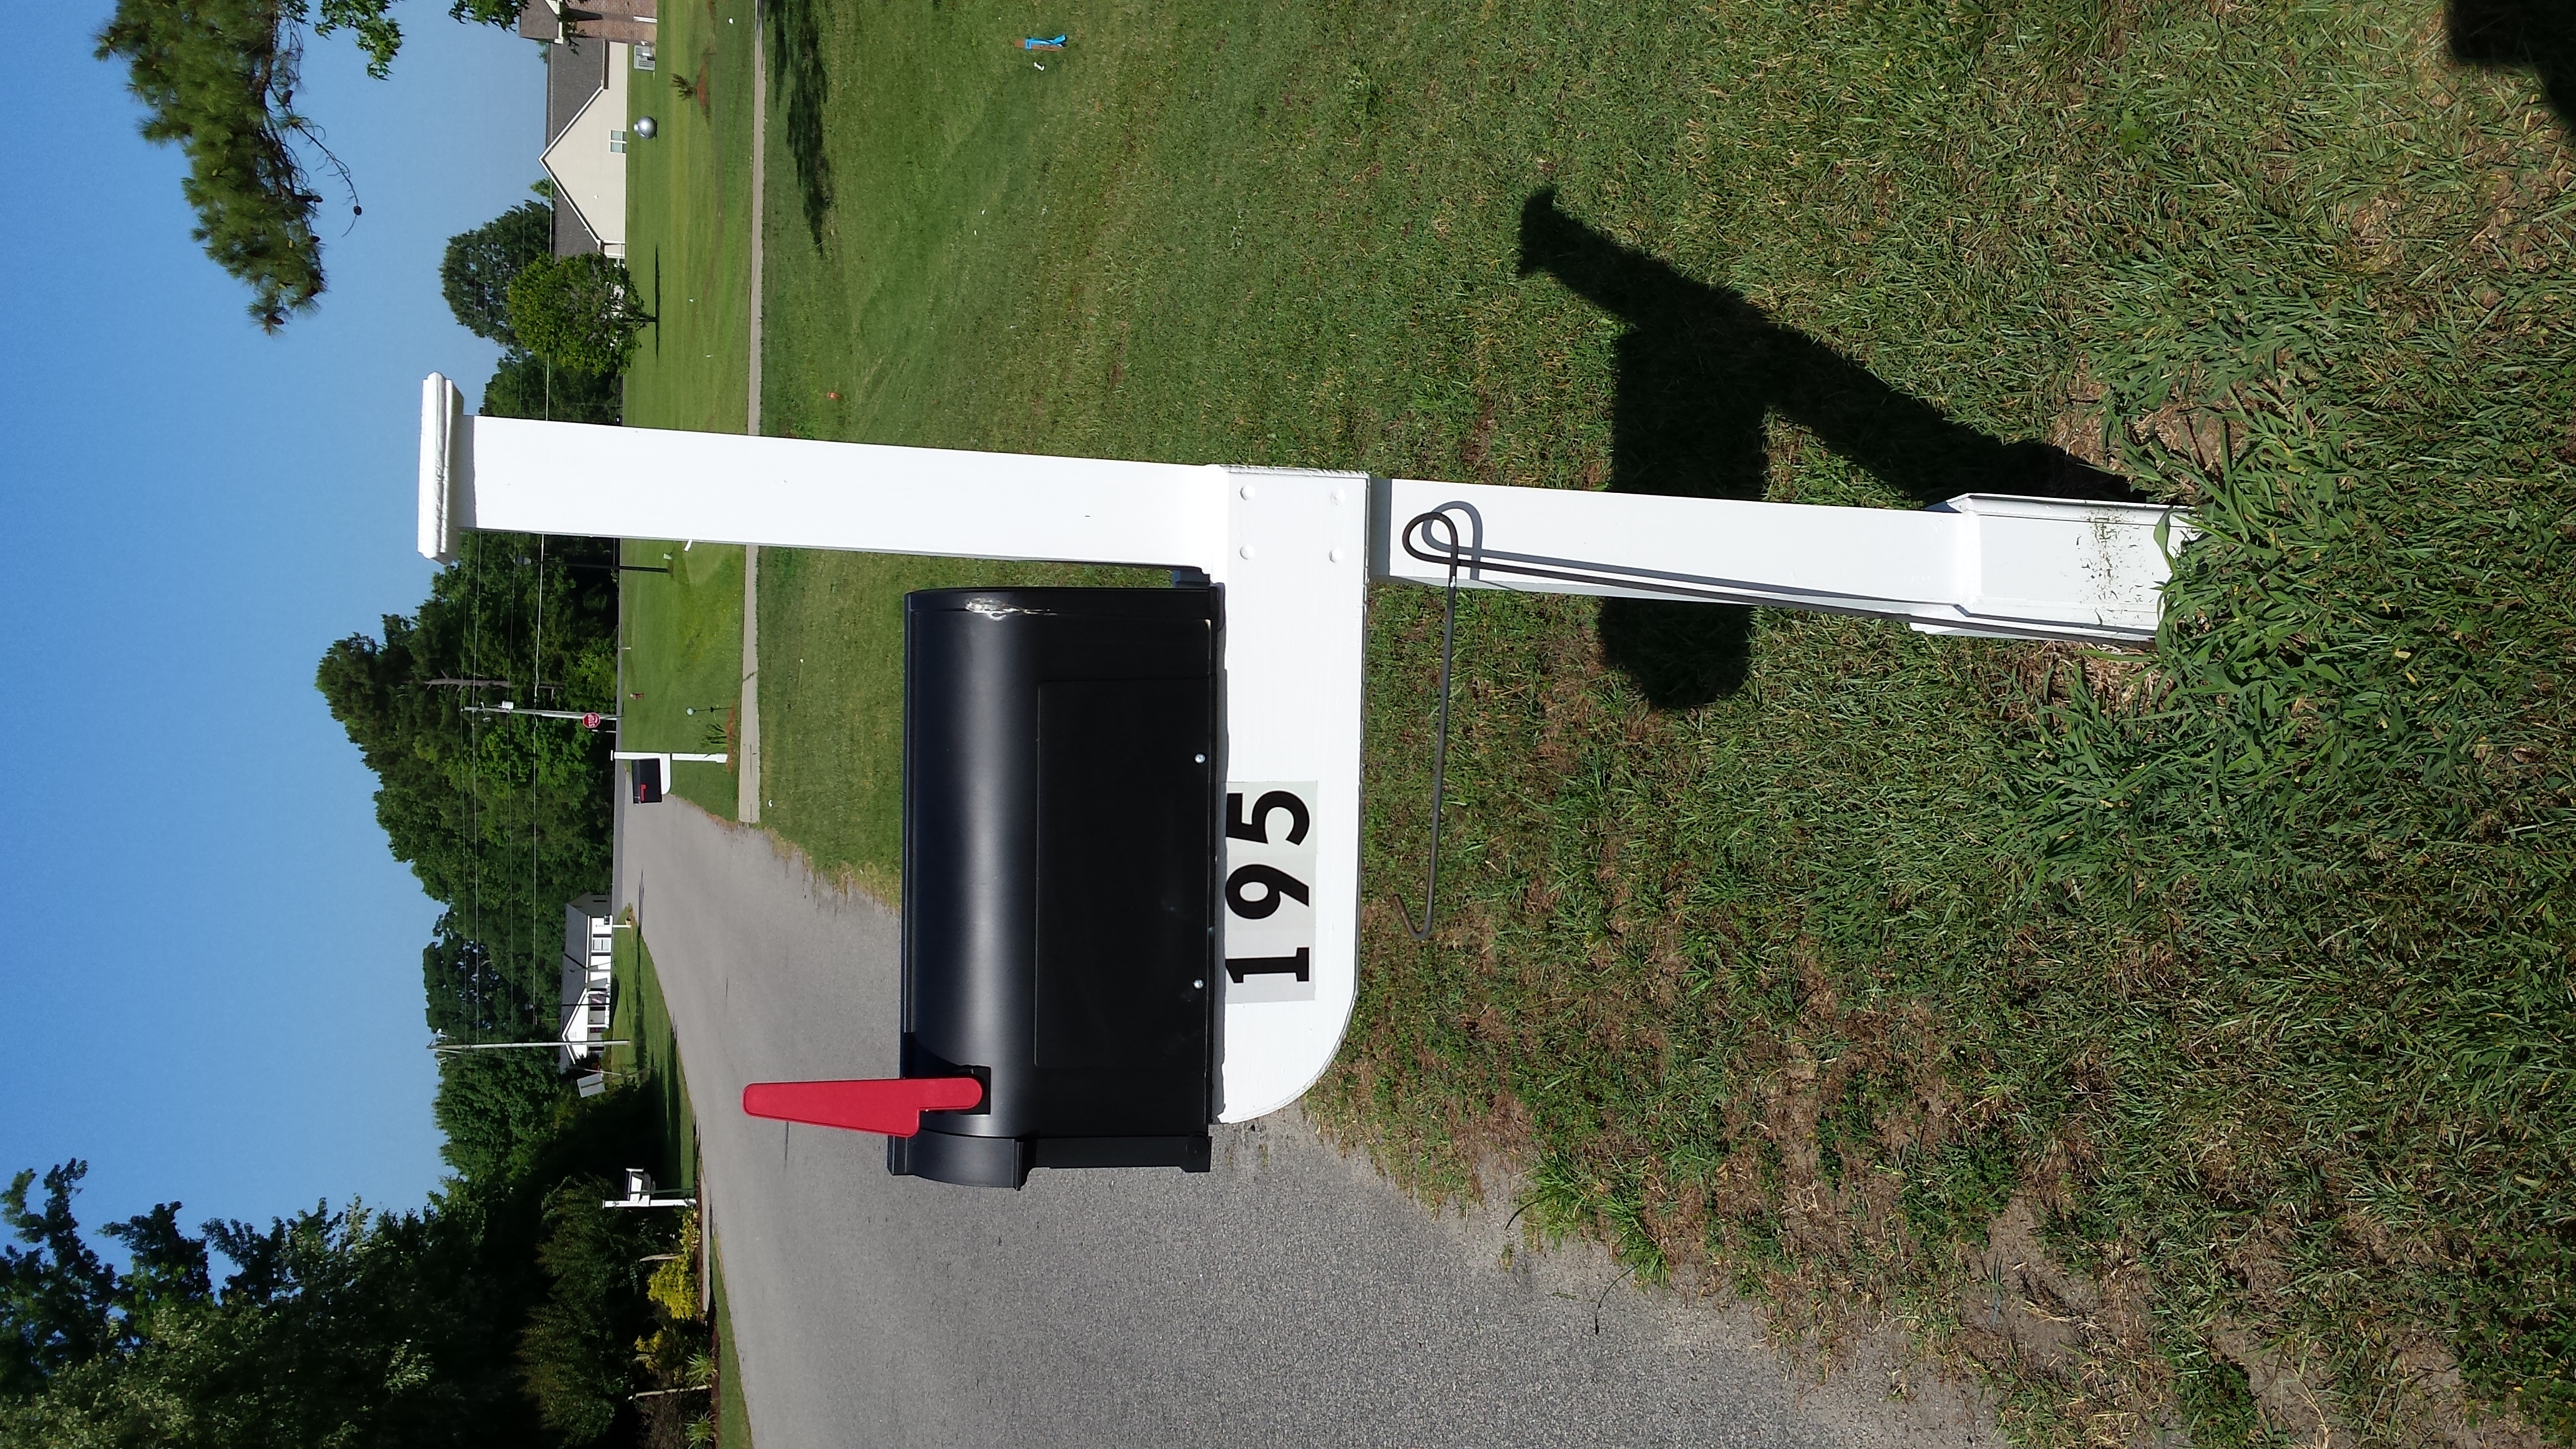 Repainted mail box post